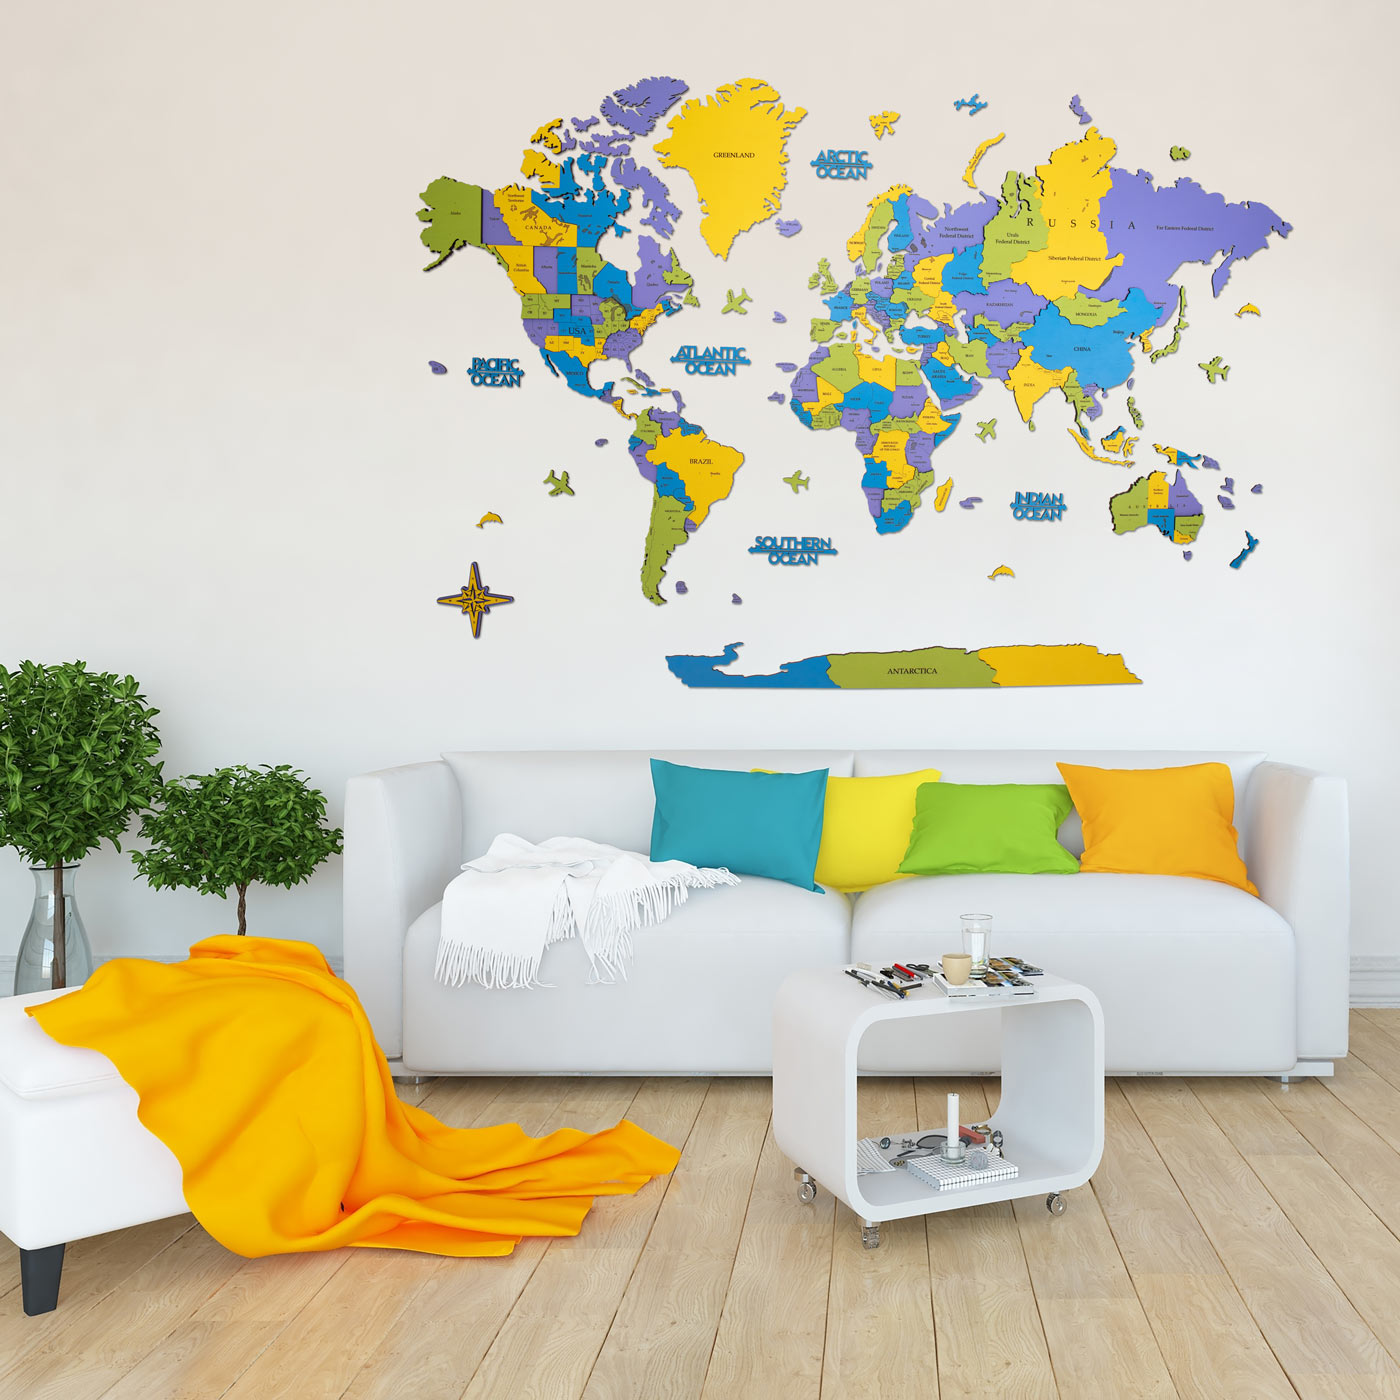 Τρισδιάστατος ξύλινος παγκόσμιος χάρτης. Ξύλινη διακόσμηση τοίχου. Πολύχρωμος παγκόσμιος χάρτης για παιδιά. Ksilart